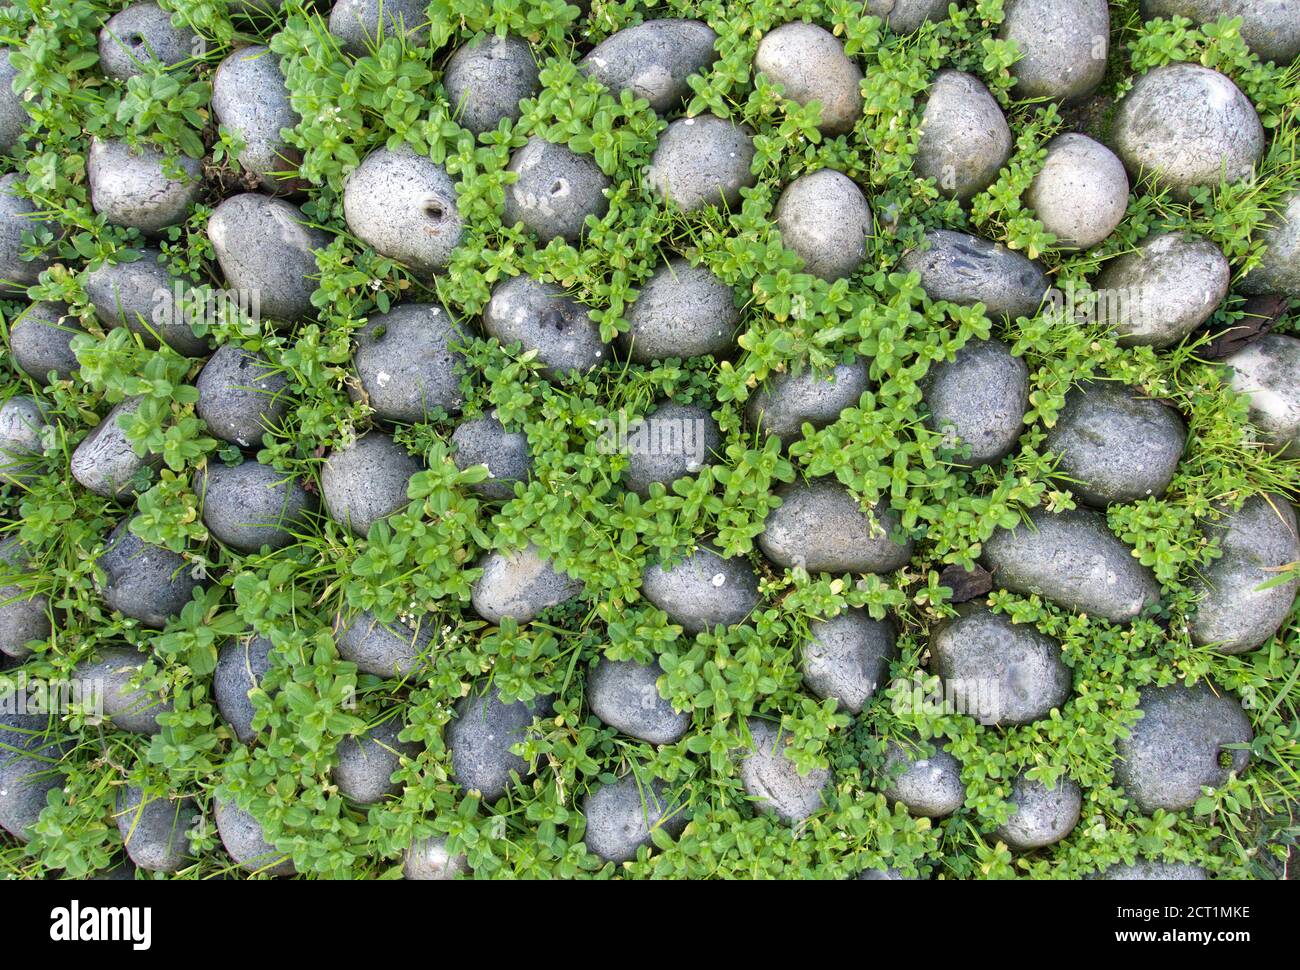 Londres/Angleterre/Royaume-Uni - 02/17/2020- pierres rondes grises entourées de vert plantes Banque D'Images